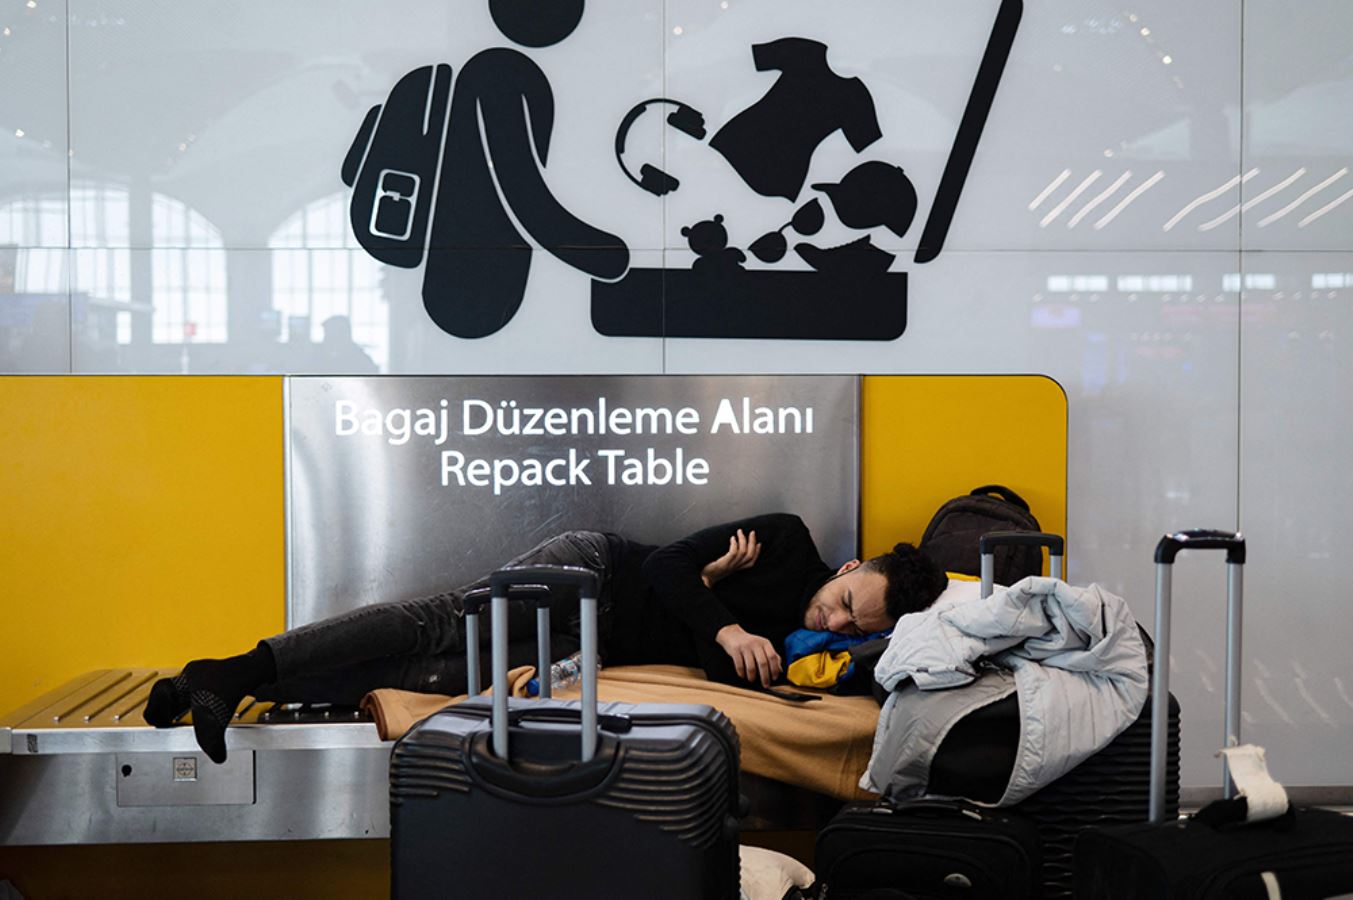 Ali Kıdık son durumu anlattı: İstanbul Havalimanı'nda neler oluyor?